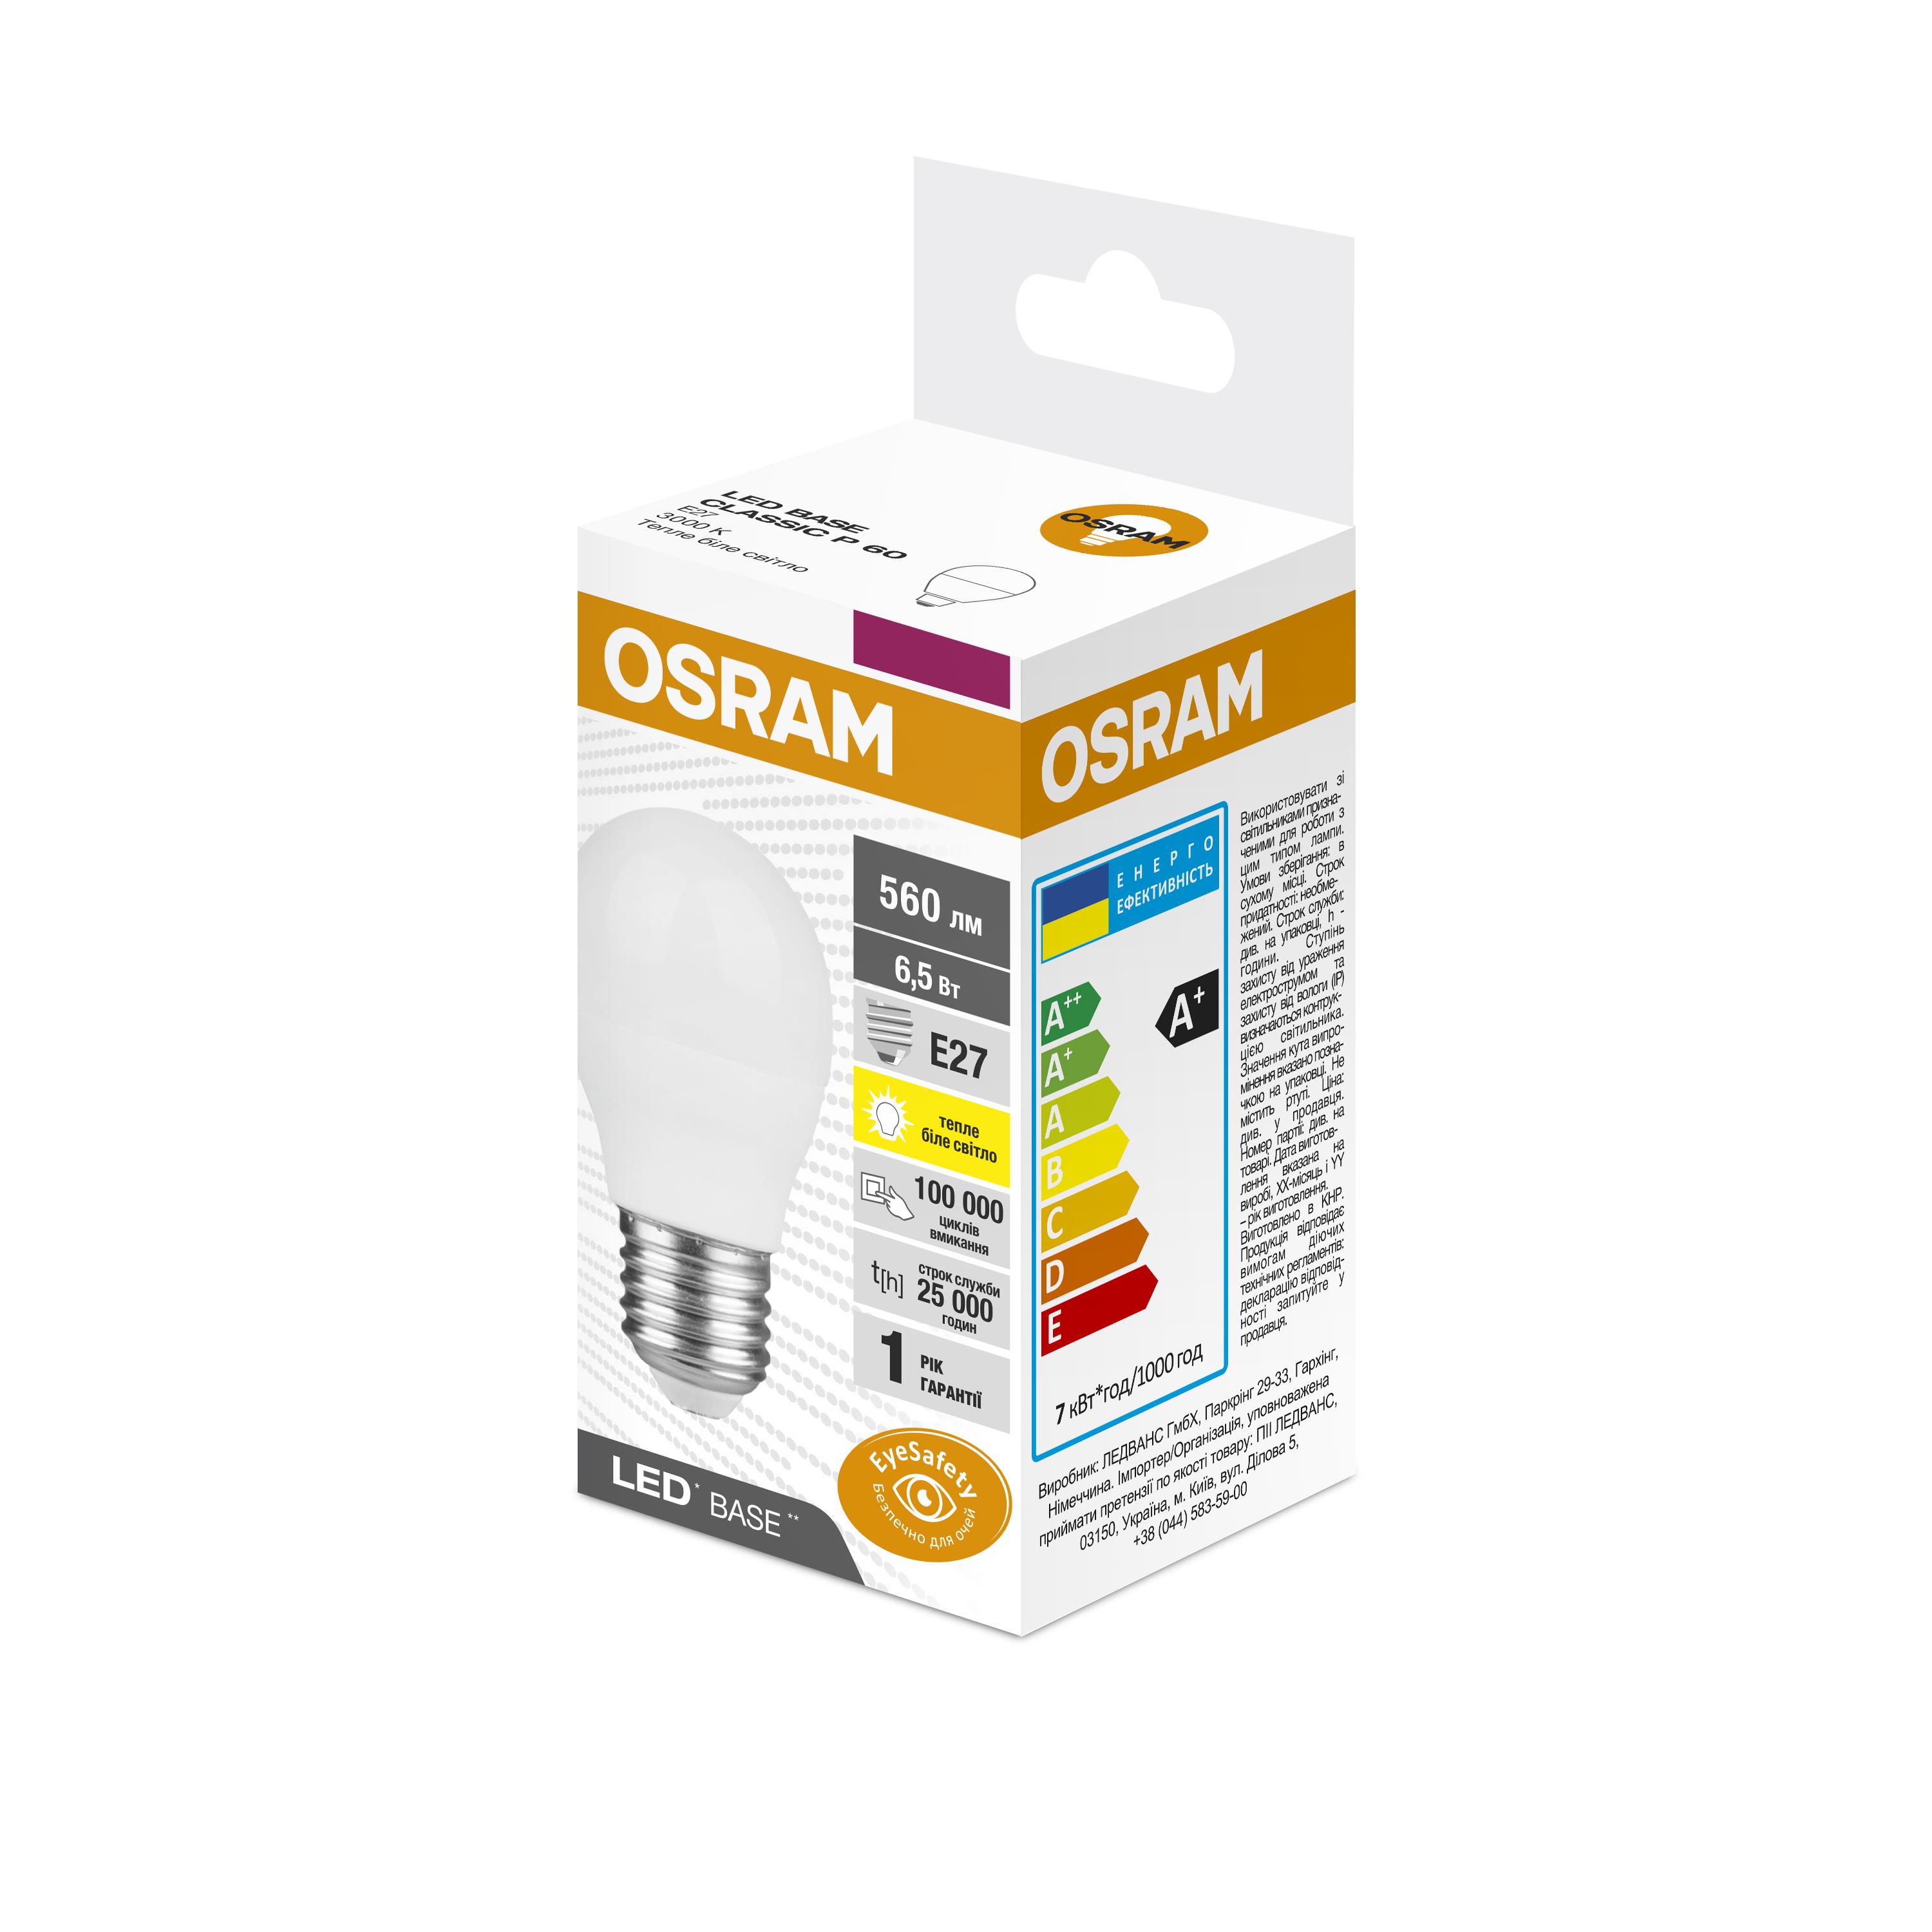 Светодиодная лампа Osram форма груша Osram Led Base P60 E27 6.5W 3000K 220V (4058075627734)